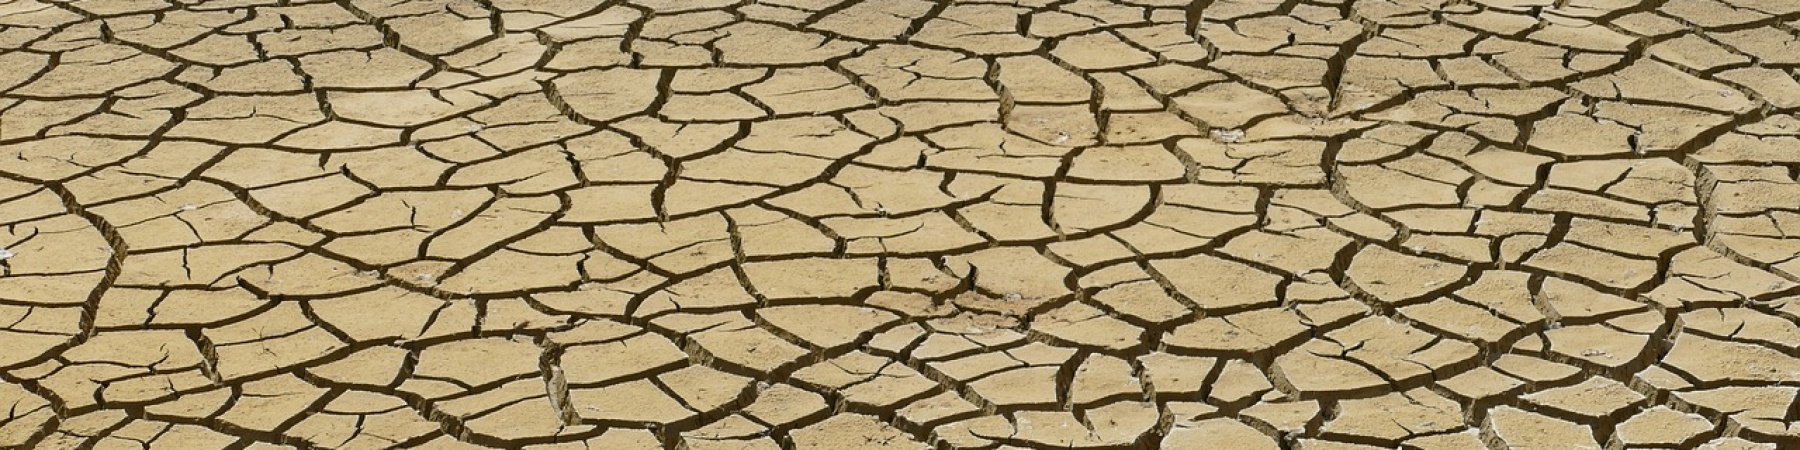 terreno arido e secco per siccità 